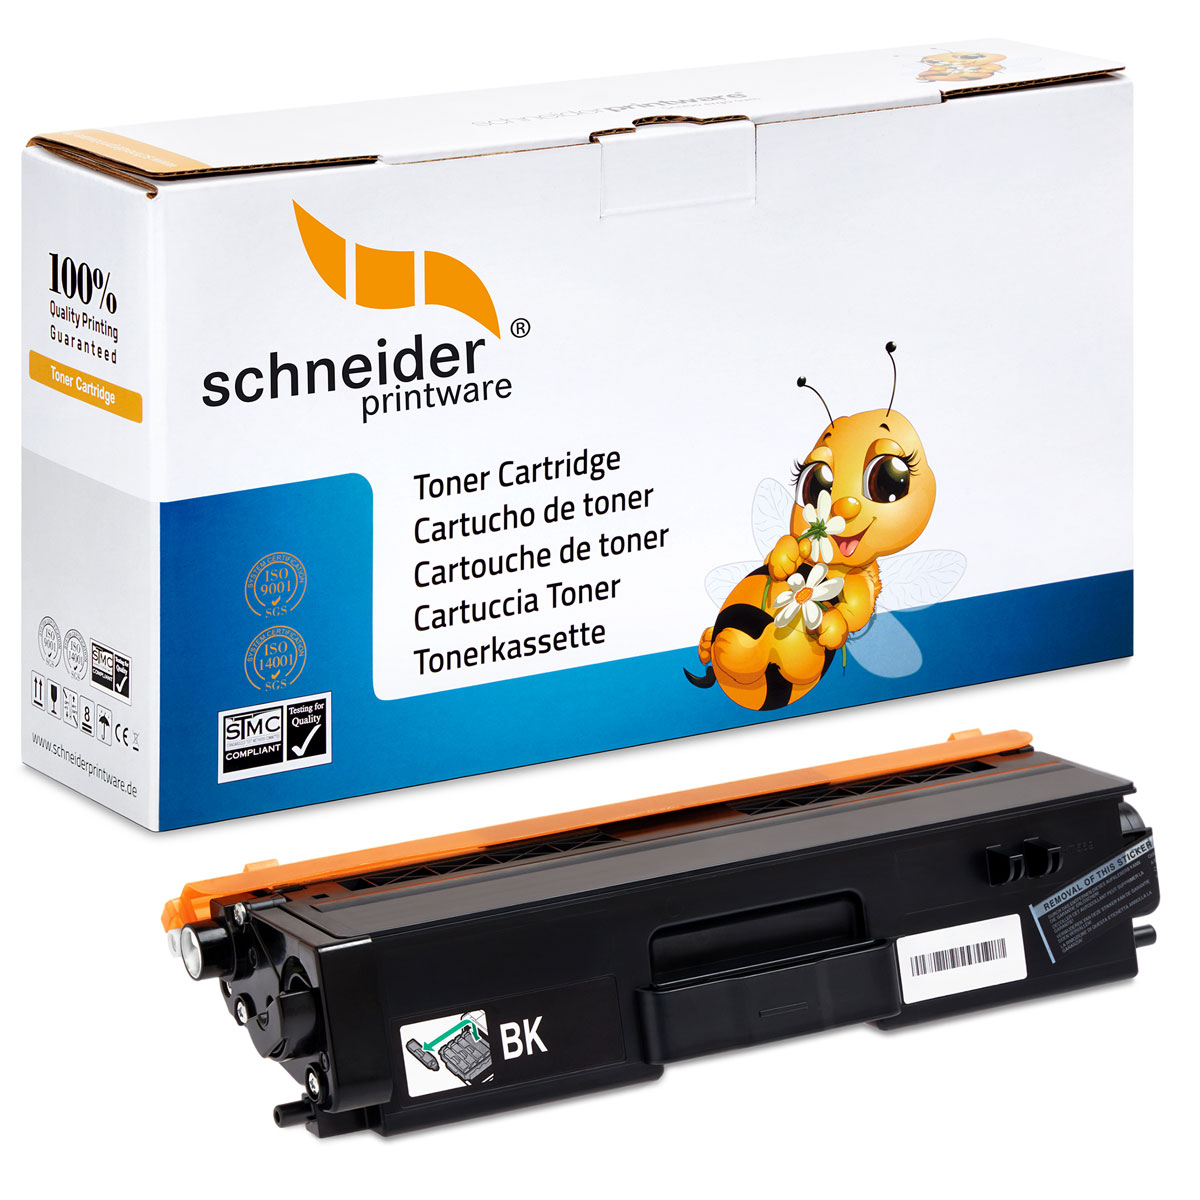 SCHNEIDERPRINTWARE Schneiderprintware Toner TN-421 Black Brothern BK ersetzt (TN-421) Toner